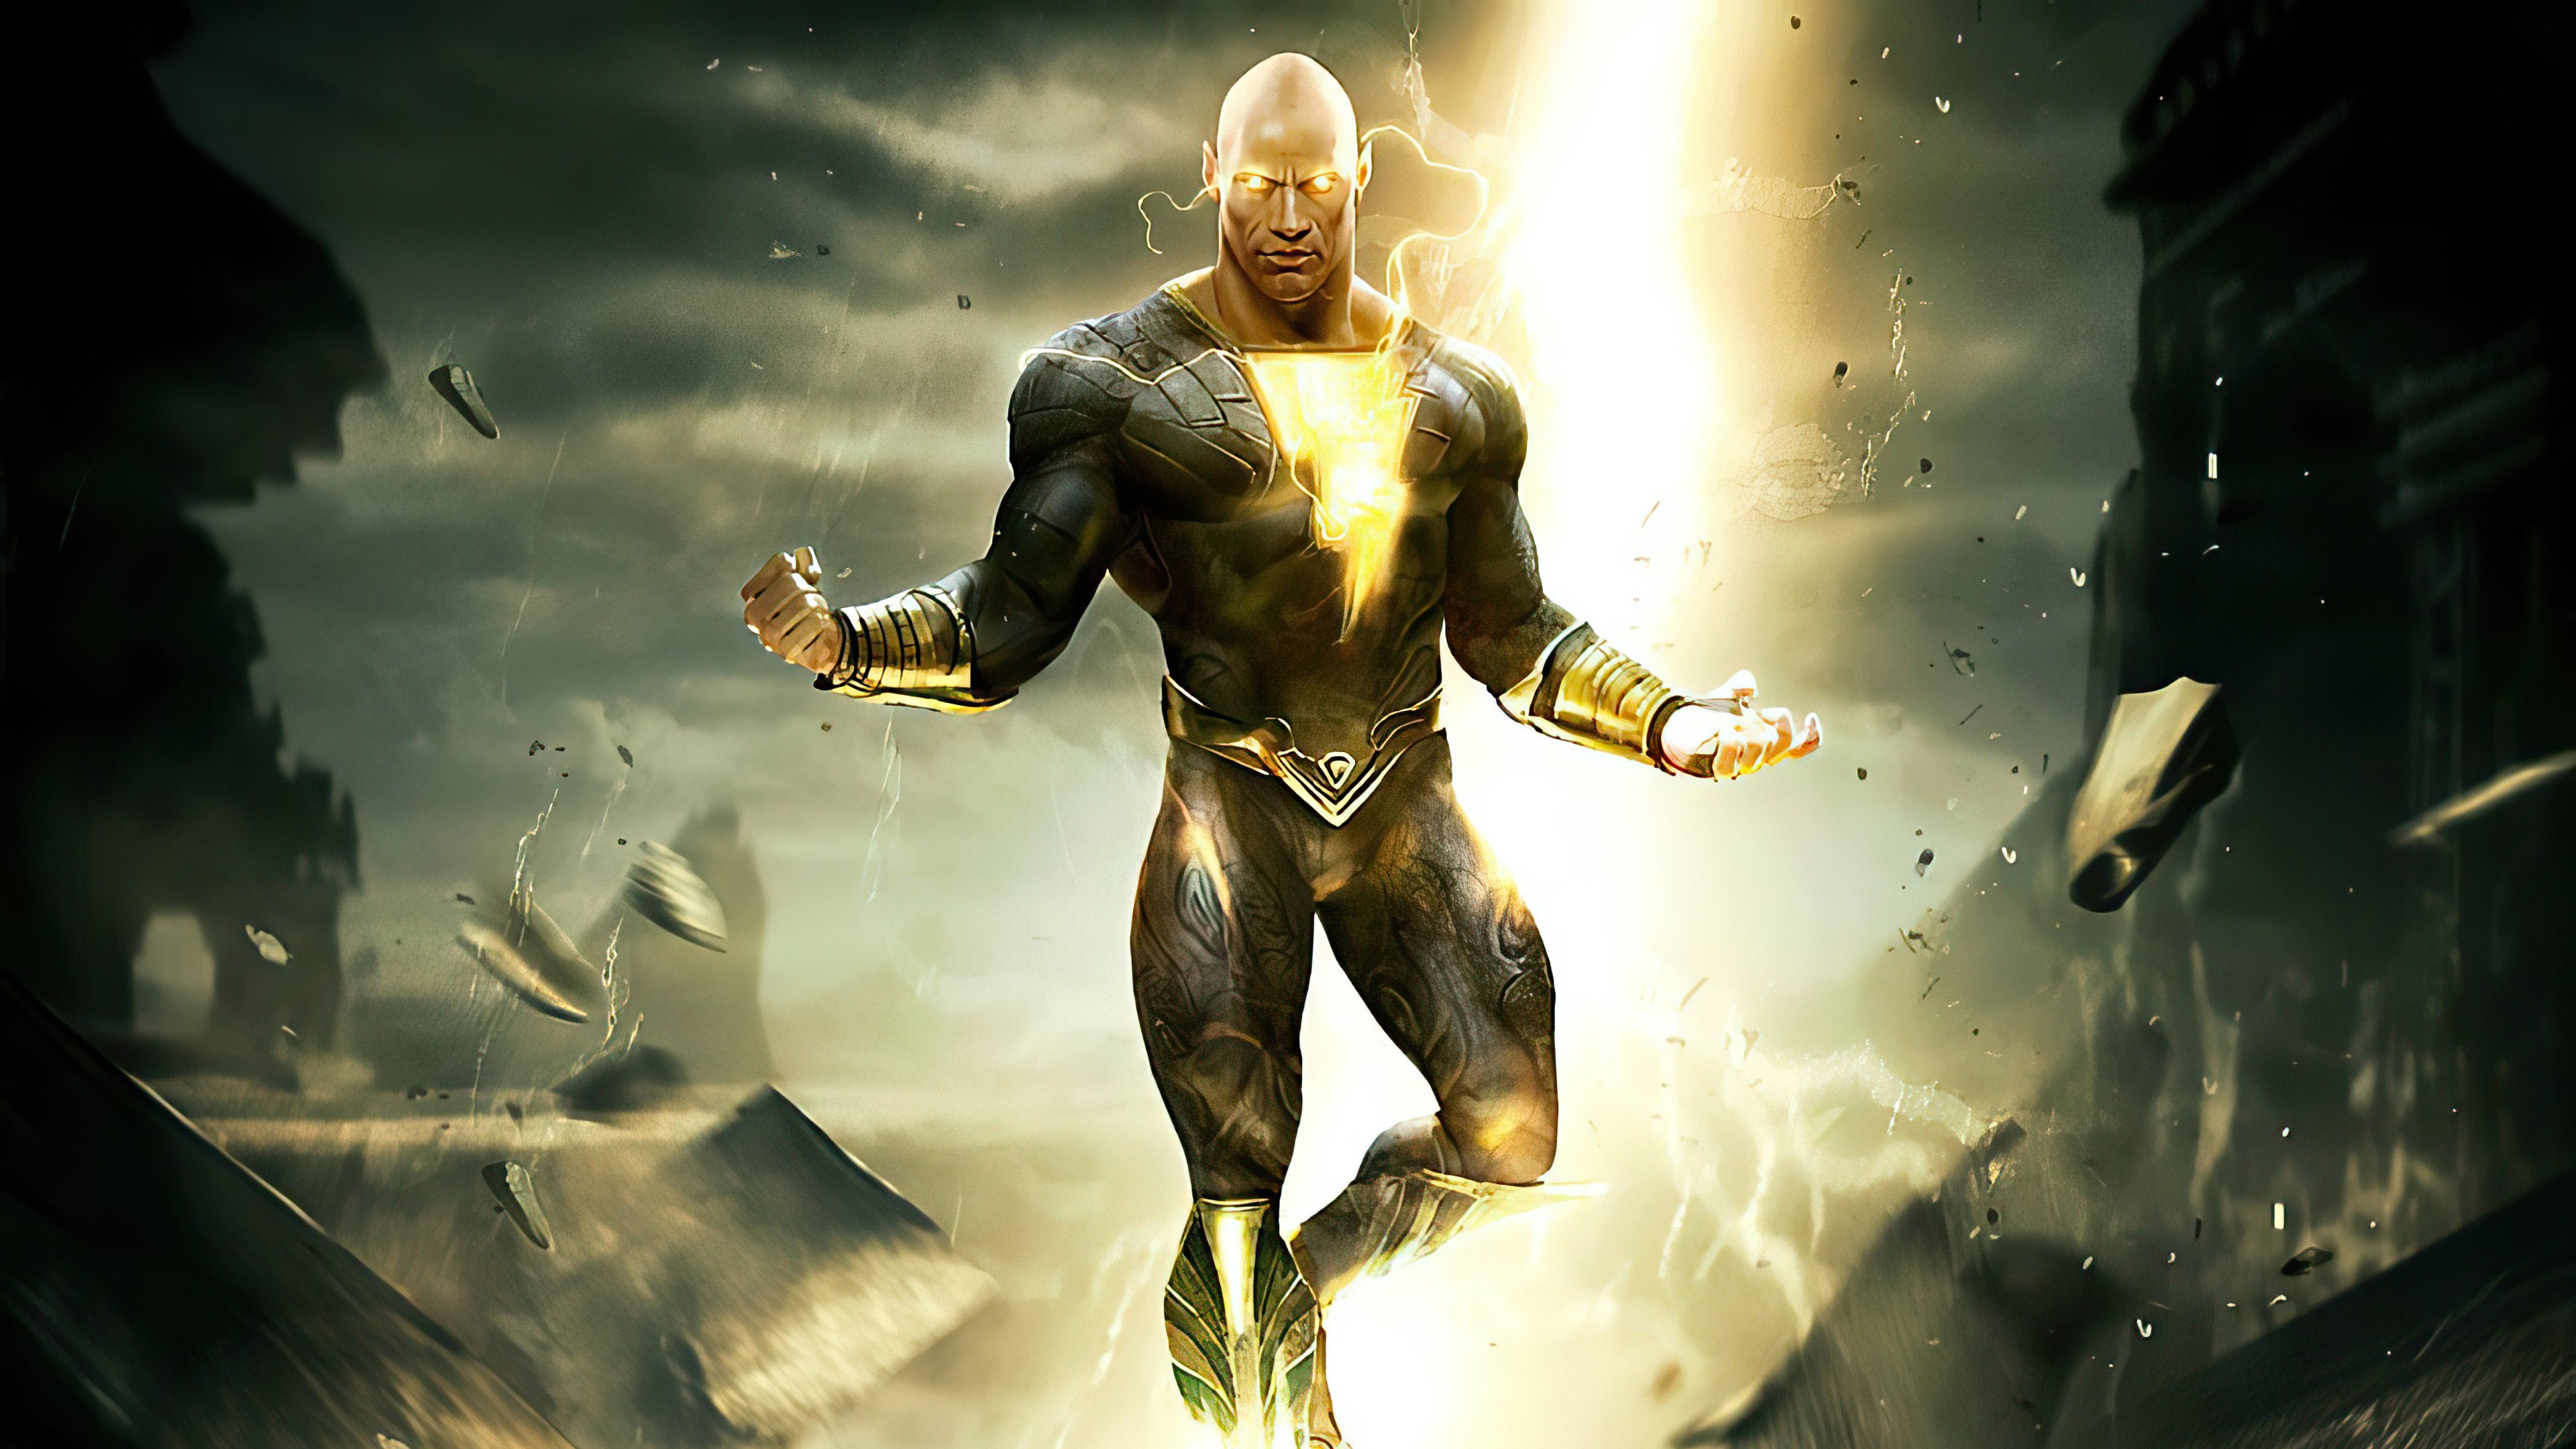 2021 black adam superheroes 4k hd movies Wallpapers